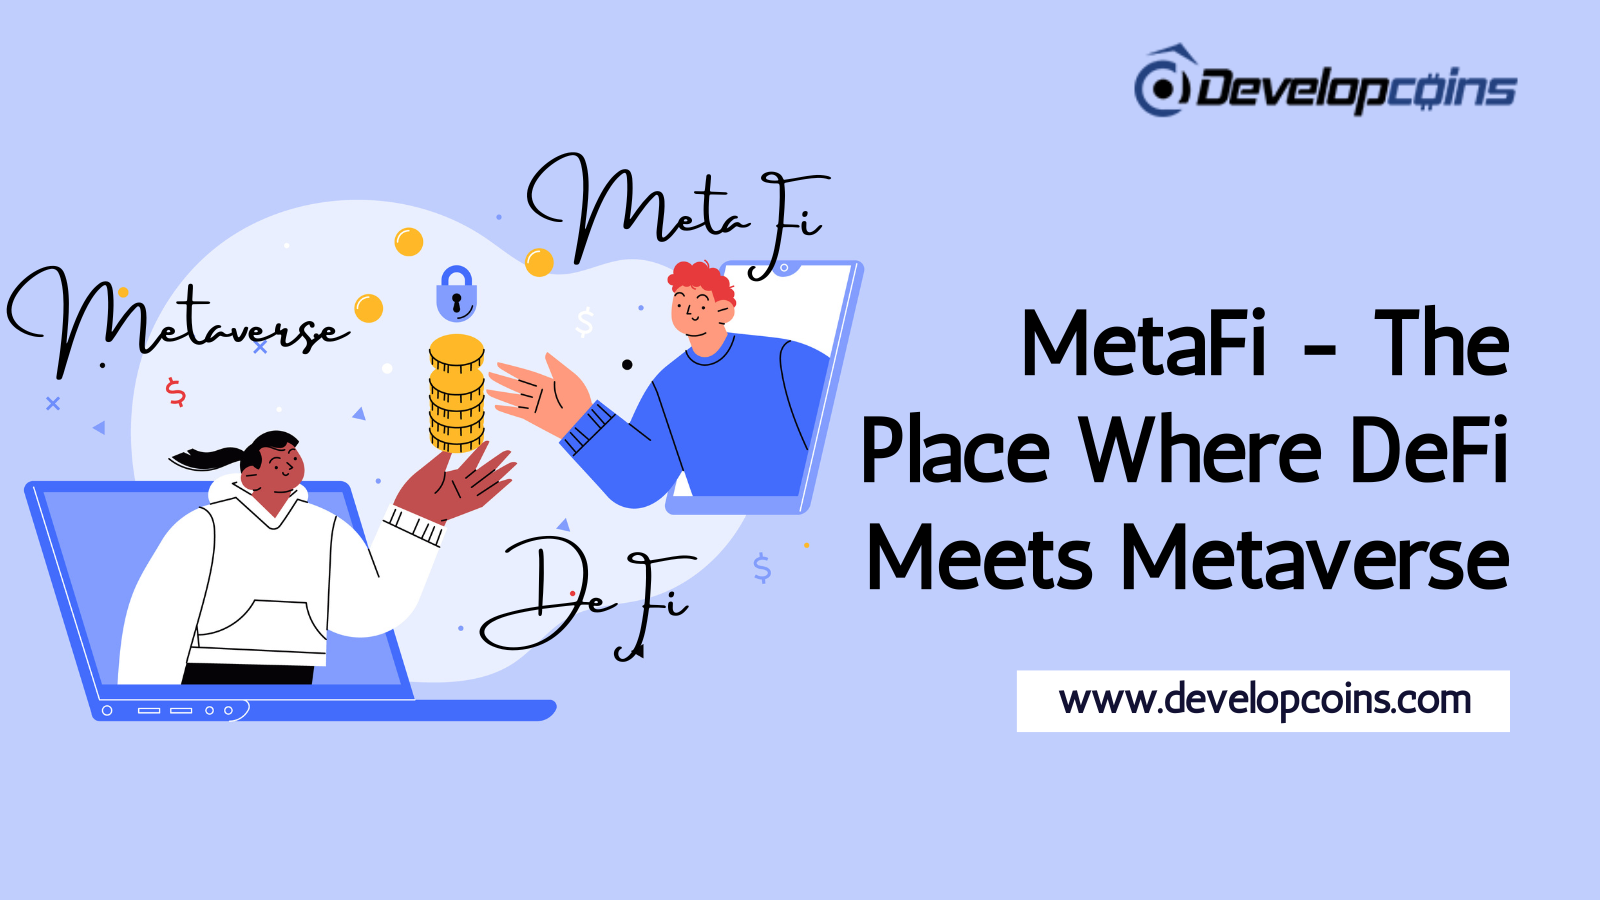 MetaFi - The Place Where DeFi Meets Metaverse